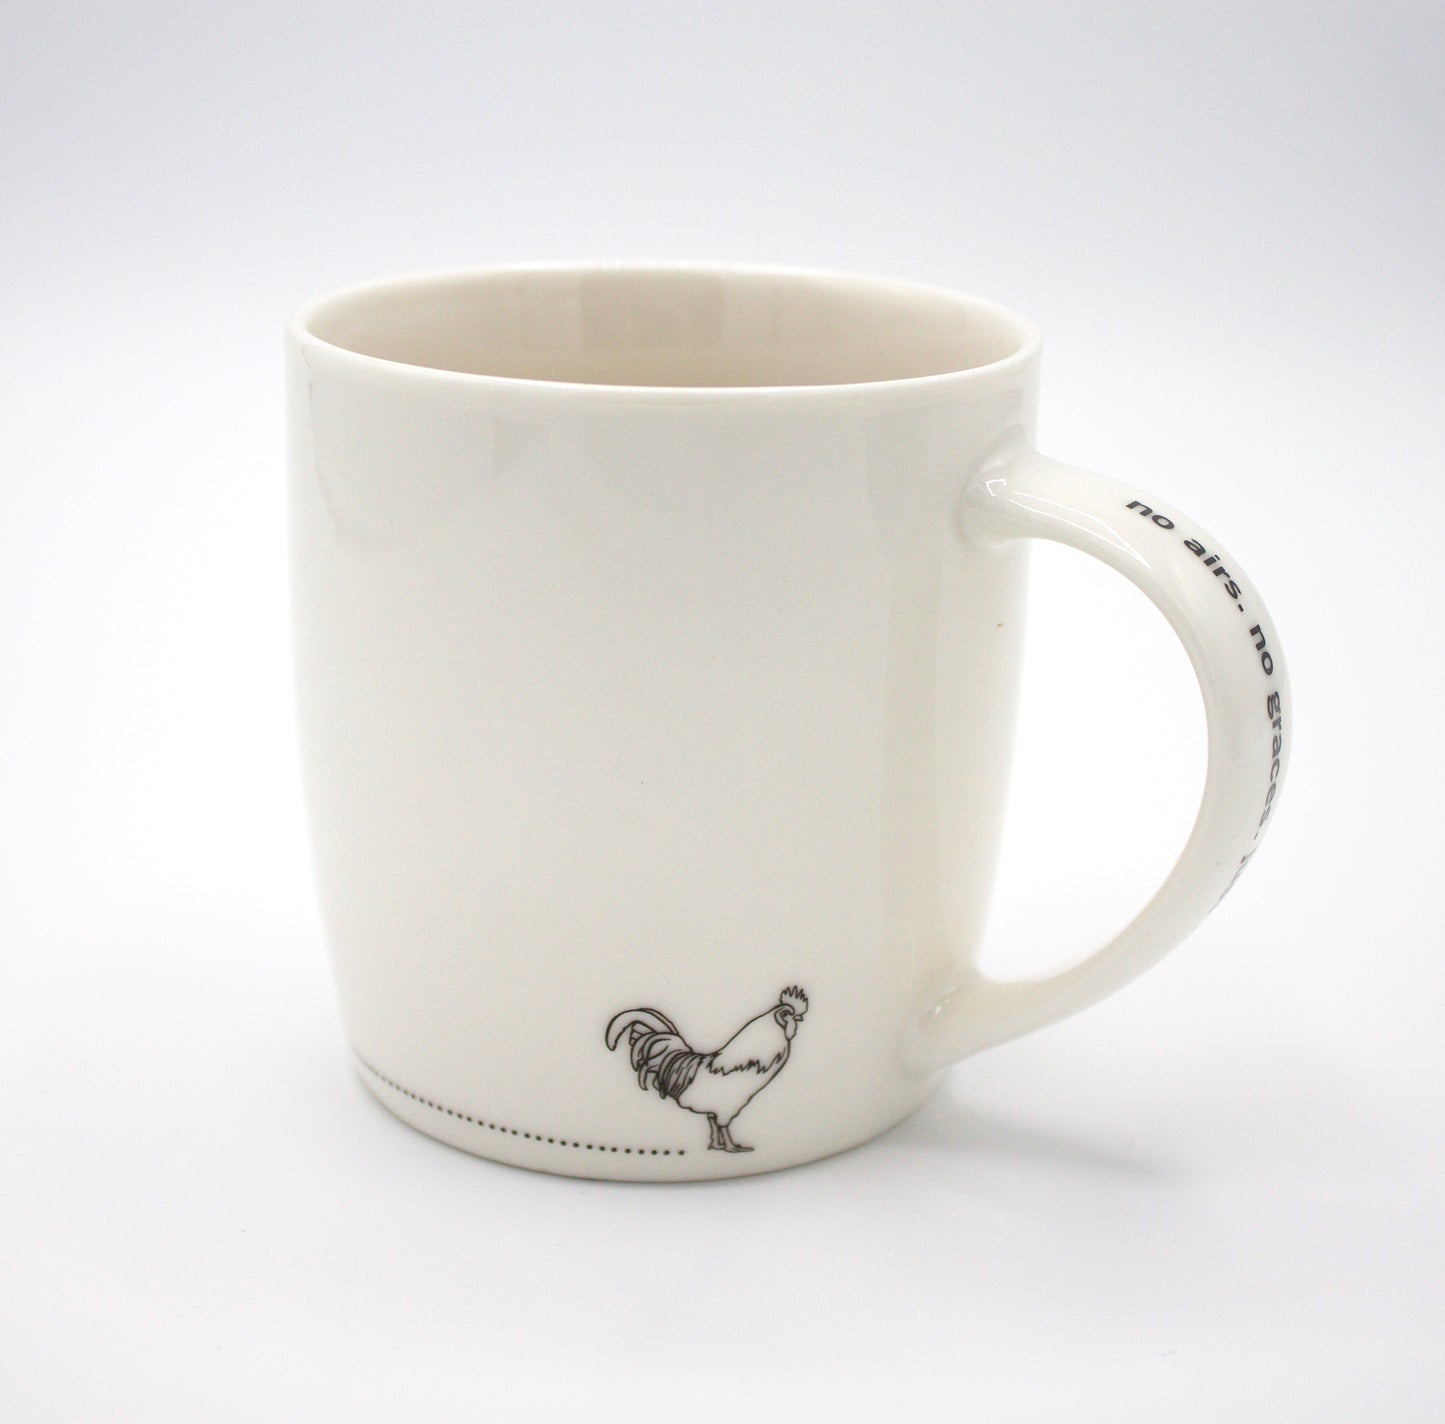 Teapigs Cockerel Design China Mug